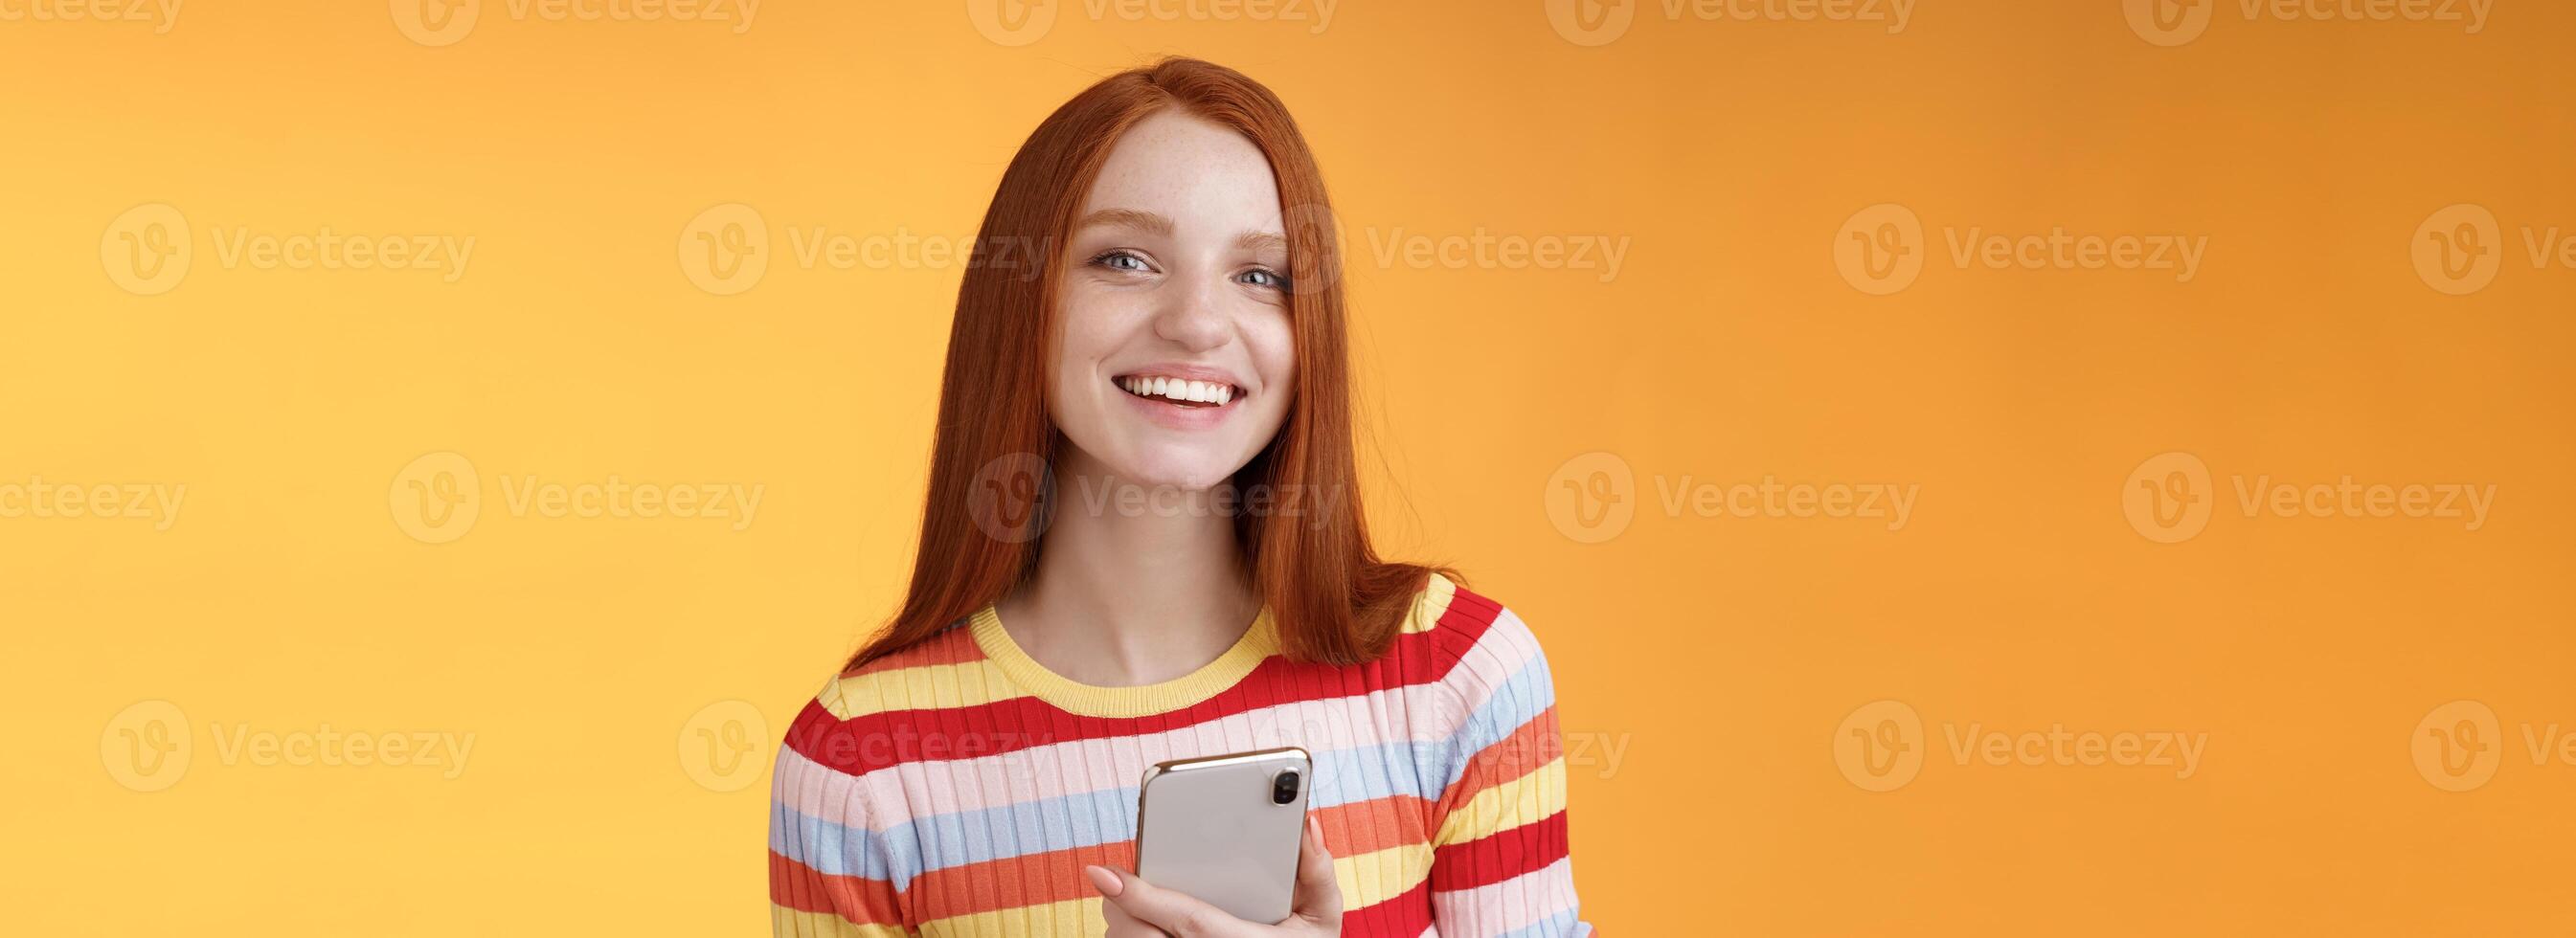 vriendelijk enthousiast jong roodharige meisje blauw ogen gebruik makend van smartphone beurt camera antwoord glimlachen breed vertellen wie verzonden bericht staand verheugd oranje achtergrond berichten, sms'en vriendje foto